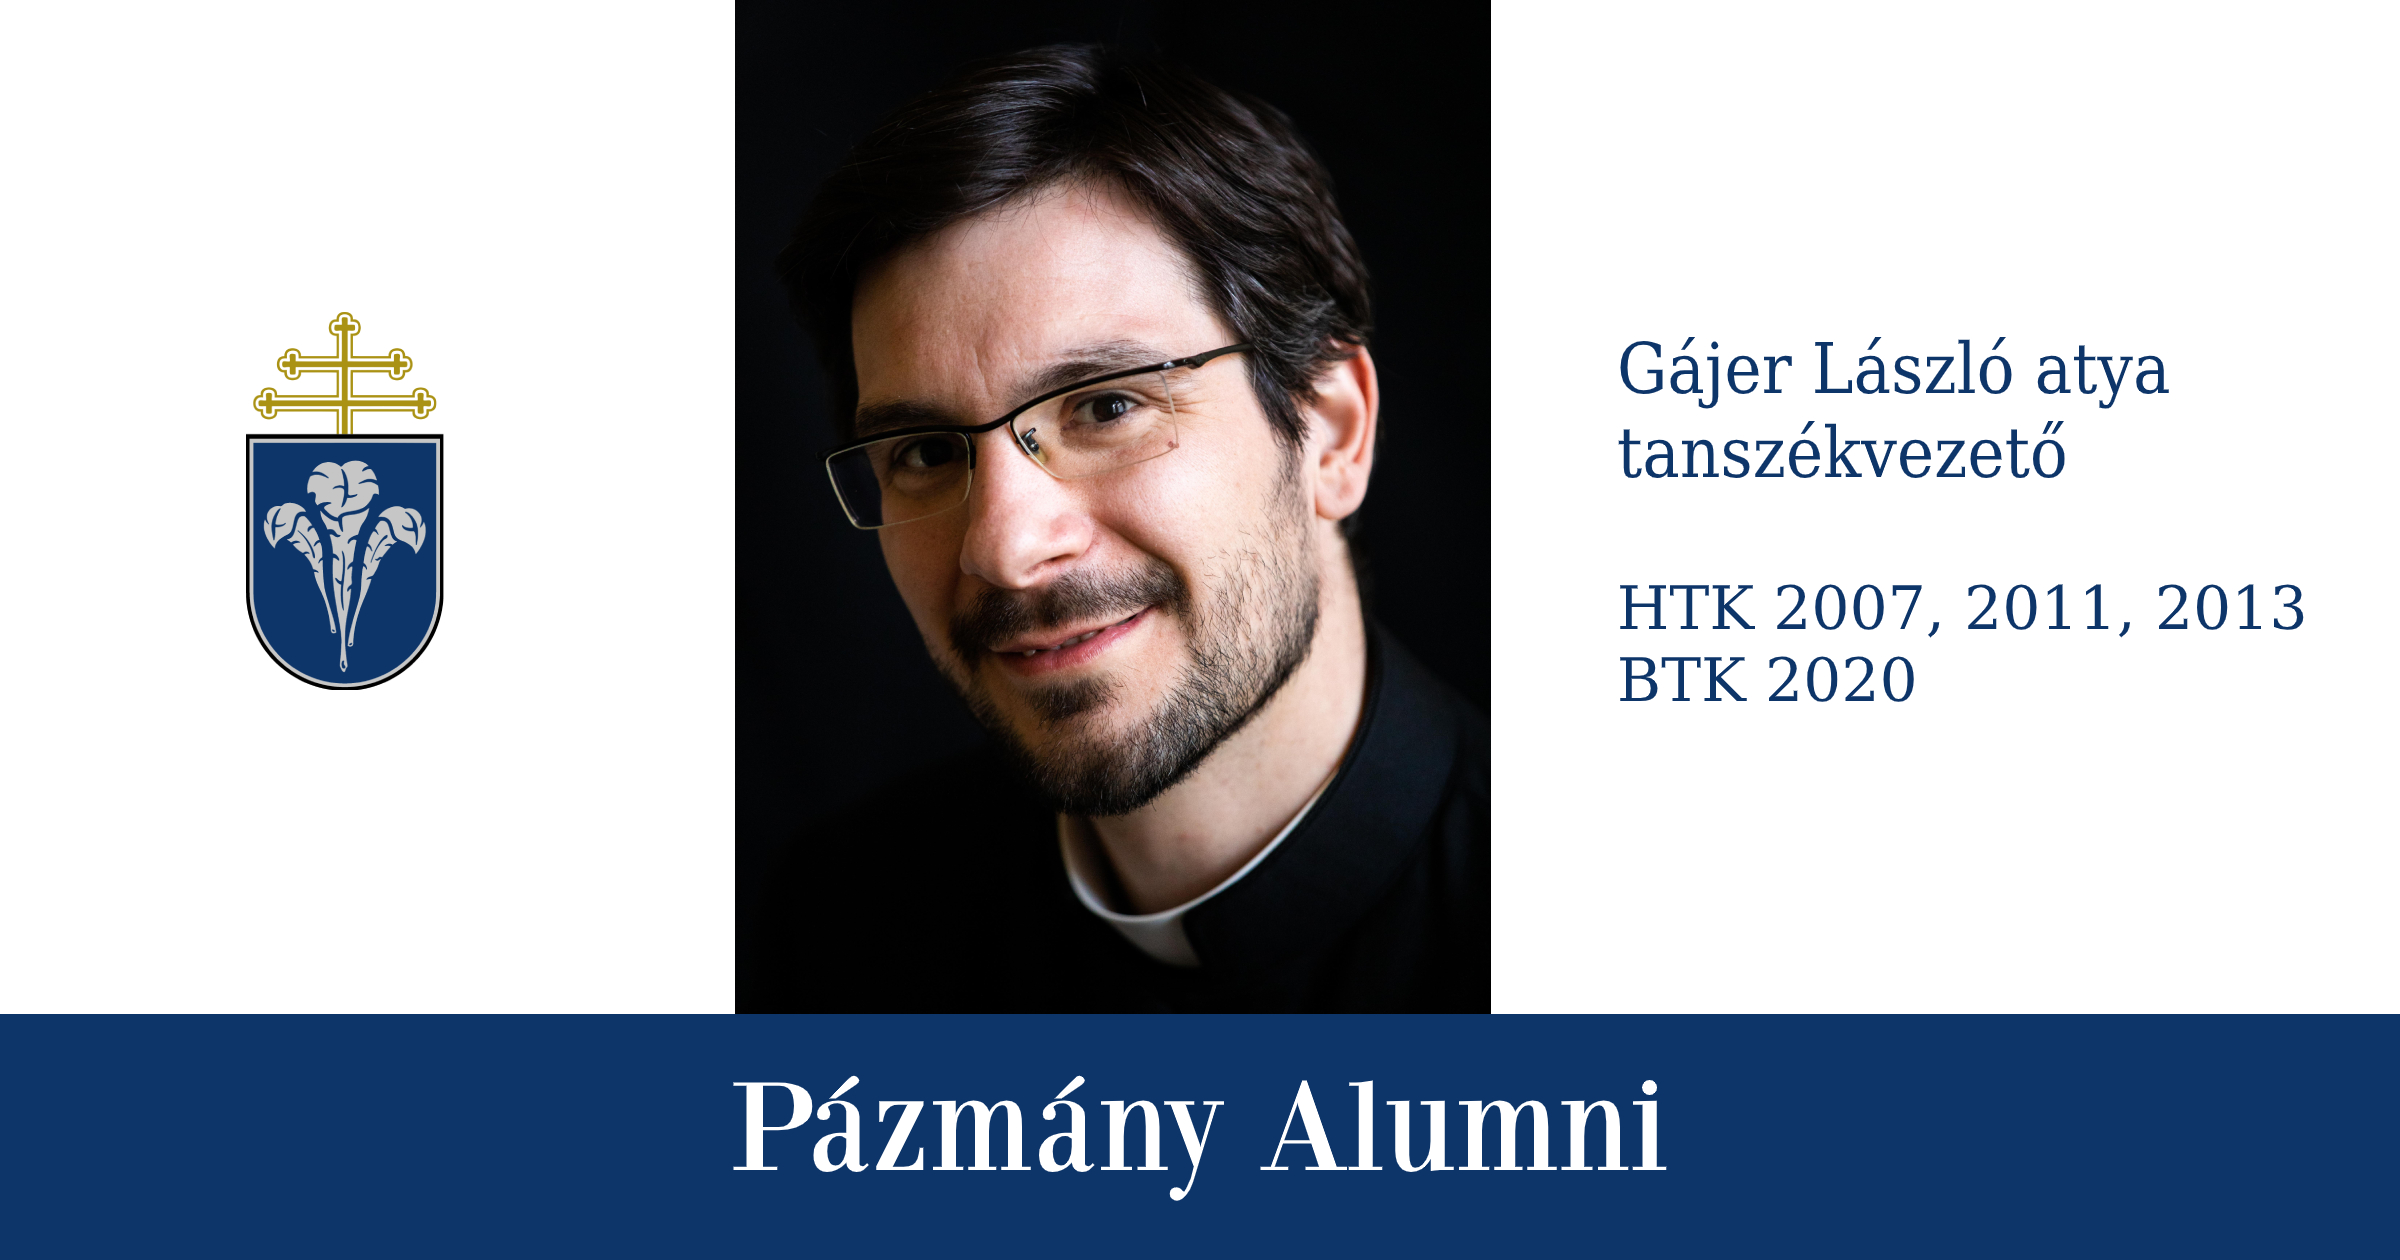 Pázmány Alumni: interjú Gájer László atyával, a HTK egykori hallgatójával